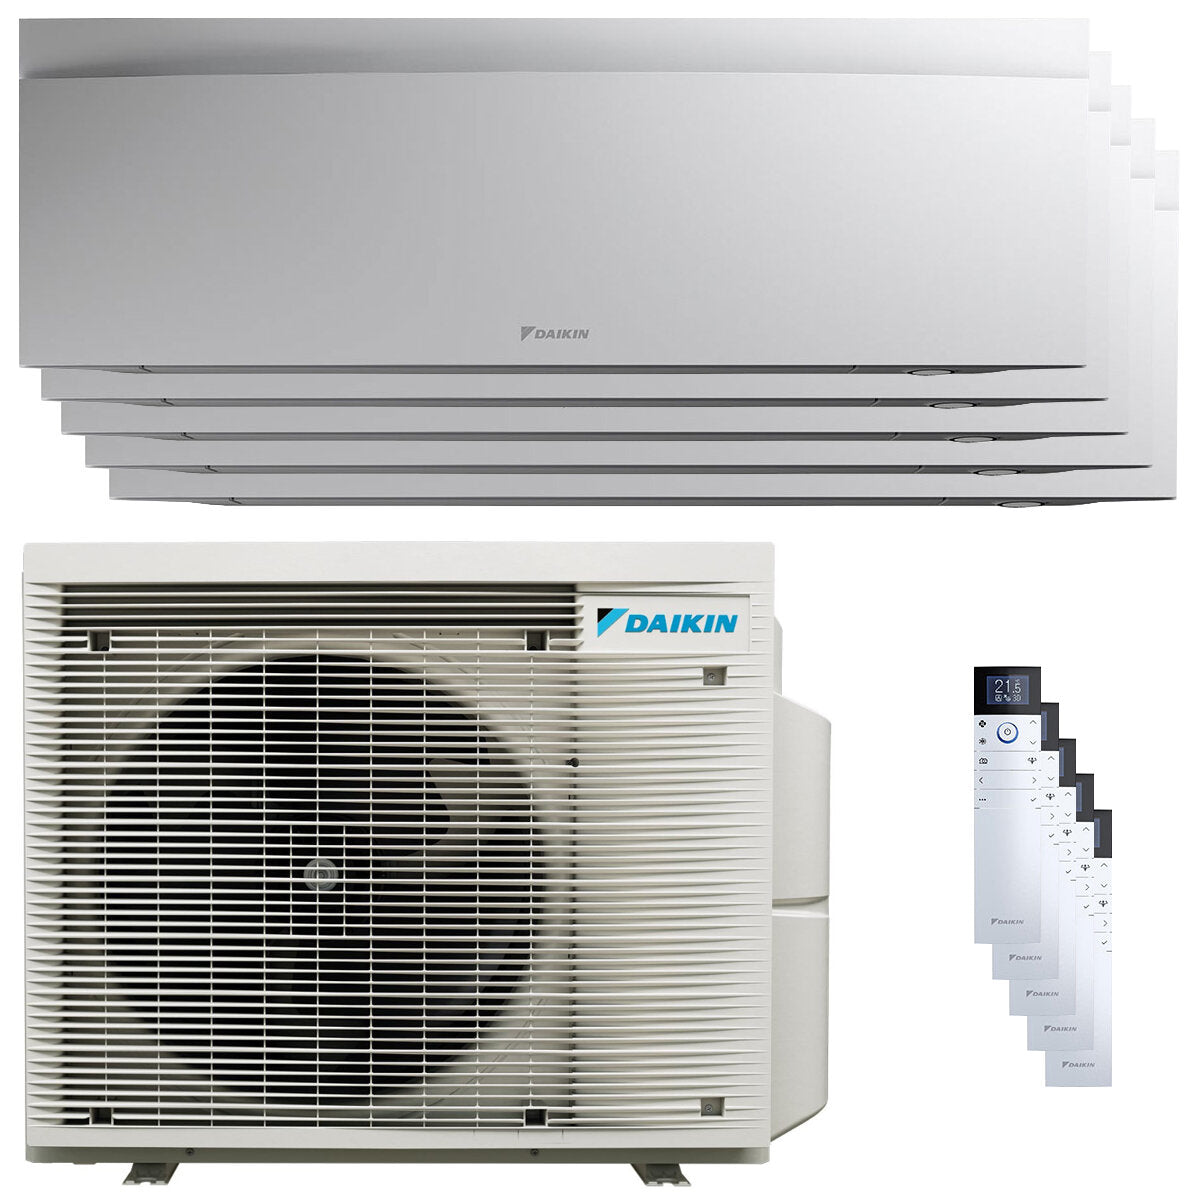 Daikin Emura 3 air conditioner penta split 9000+9000+9000+9000+18000 BTU inverter A++ wifi outdoor unit 7.8 kW White